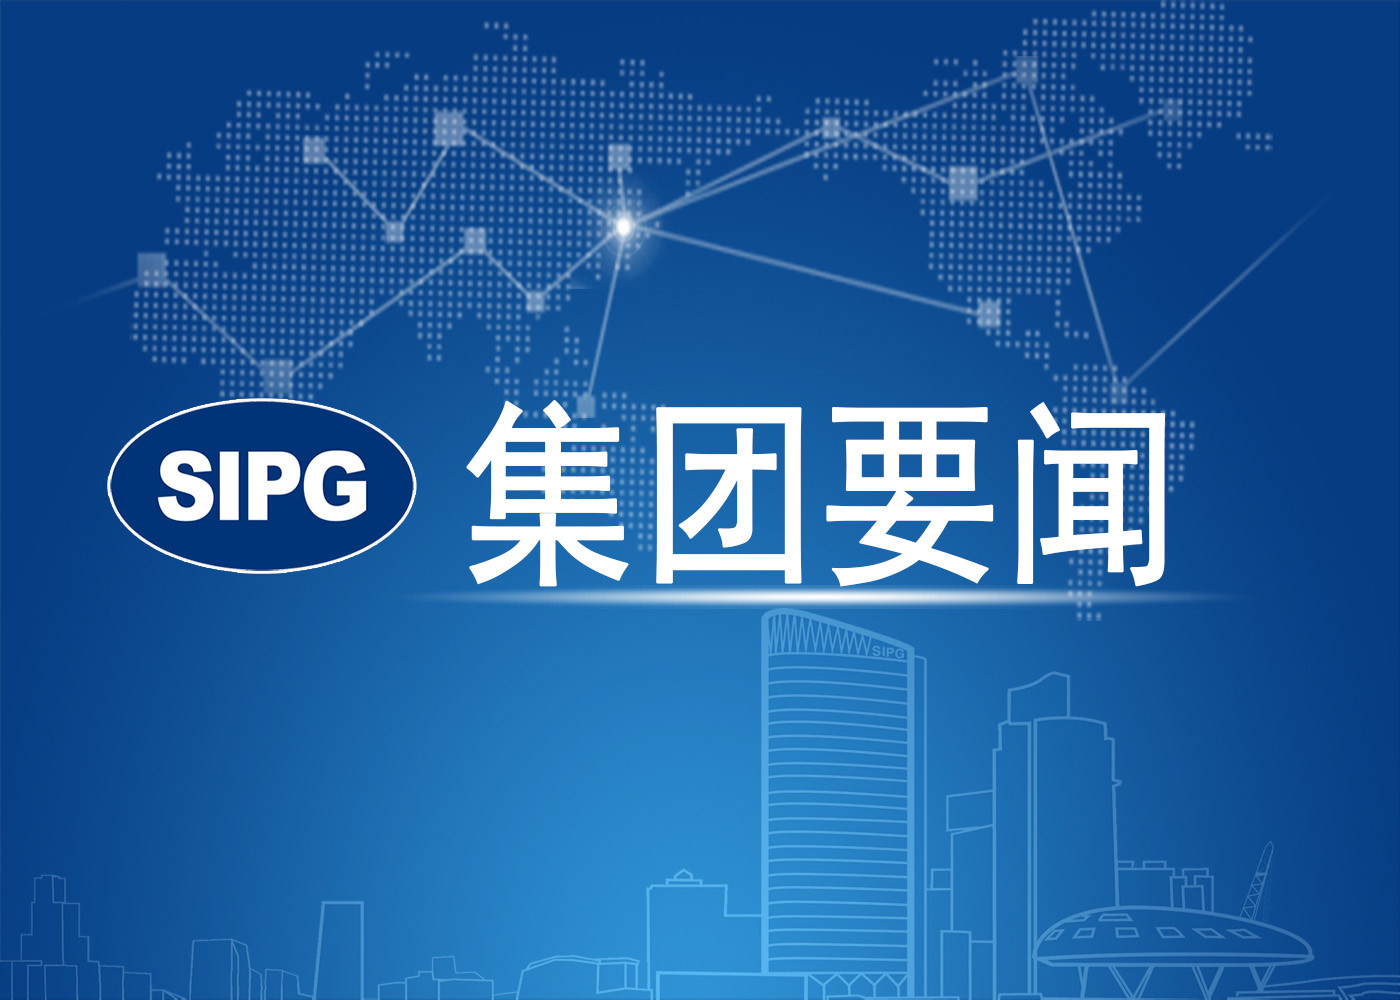 上海国际港务（集团）股份有限公司2021年度非统一委托审计项目审计机构名录公开选聘公告